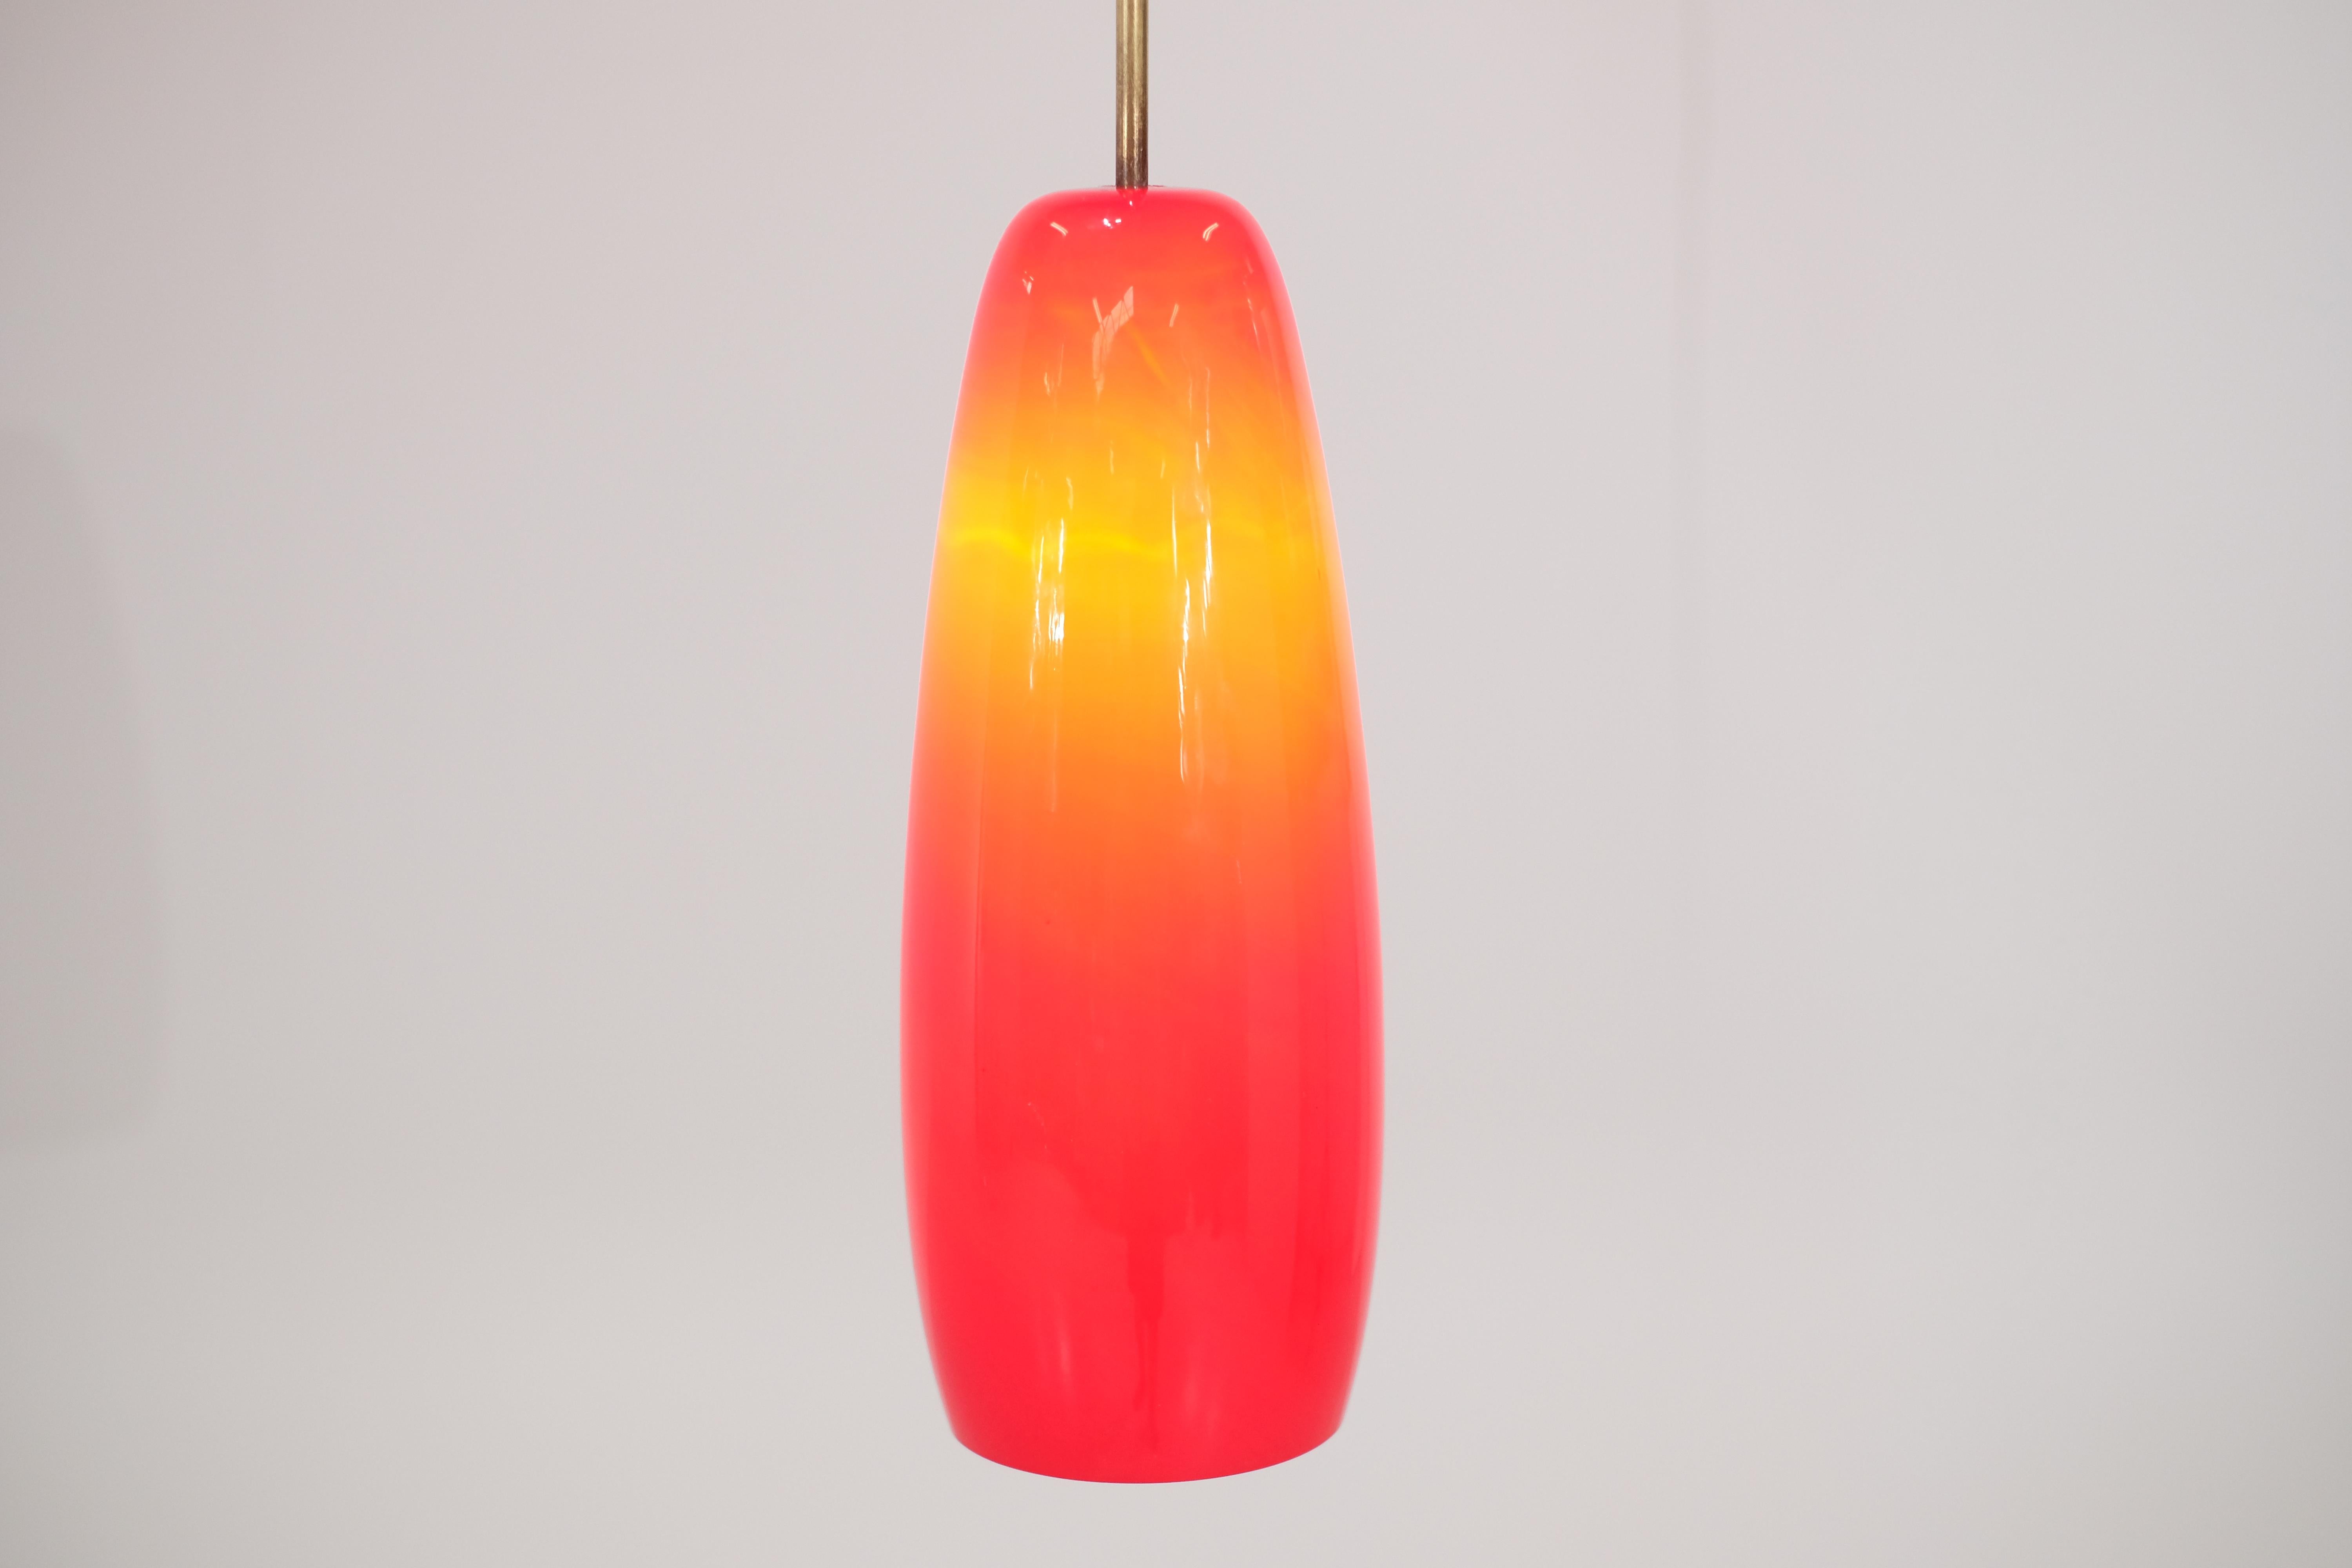 Prächtige italienische Lampe aus rotem Opalin aus den 70er Jahren.
Diese Leuchte bietet einen besonders interessanten Lichtverlauf. 
Zögern Sie nicht, weitere Bilder oder Videos von der Lampe anzufordern
Es ist in sehr gutem Vintage-Zustand.